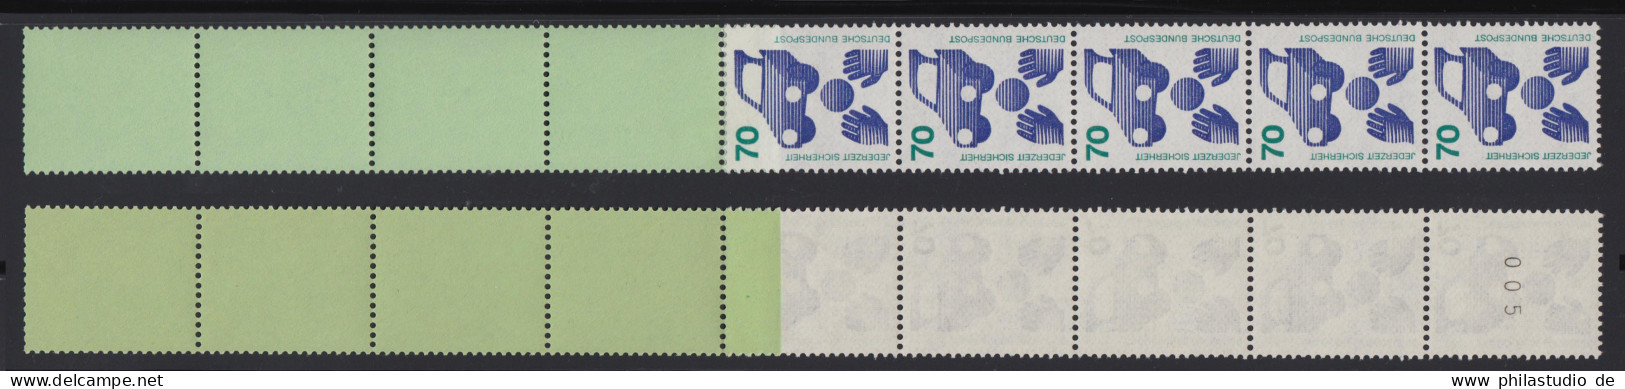 Bund 773 A RE 5+4 Grün/dextrin Schwarze Nr. Unfallverhütung 70 Pf Postfrisch - Rollenmarken